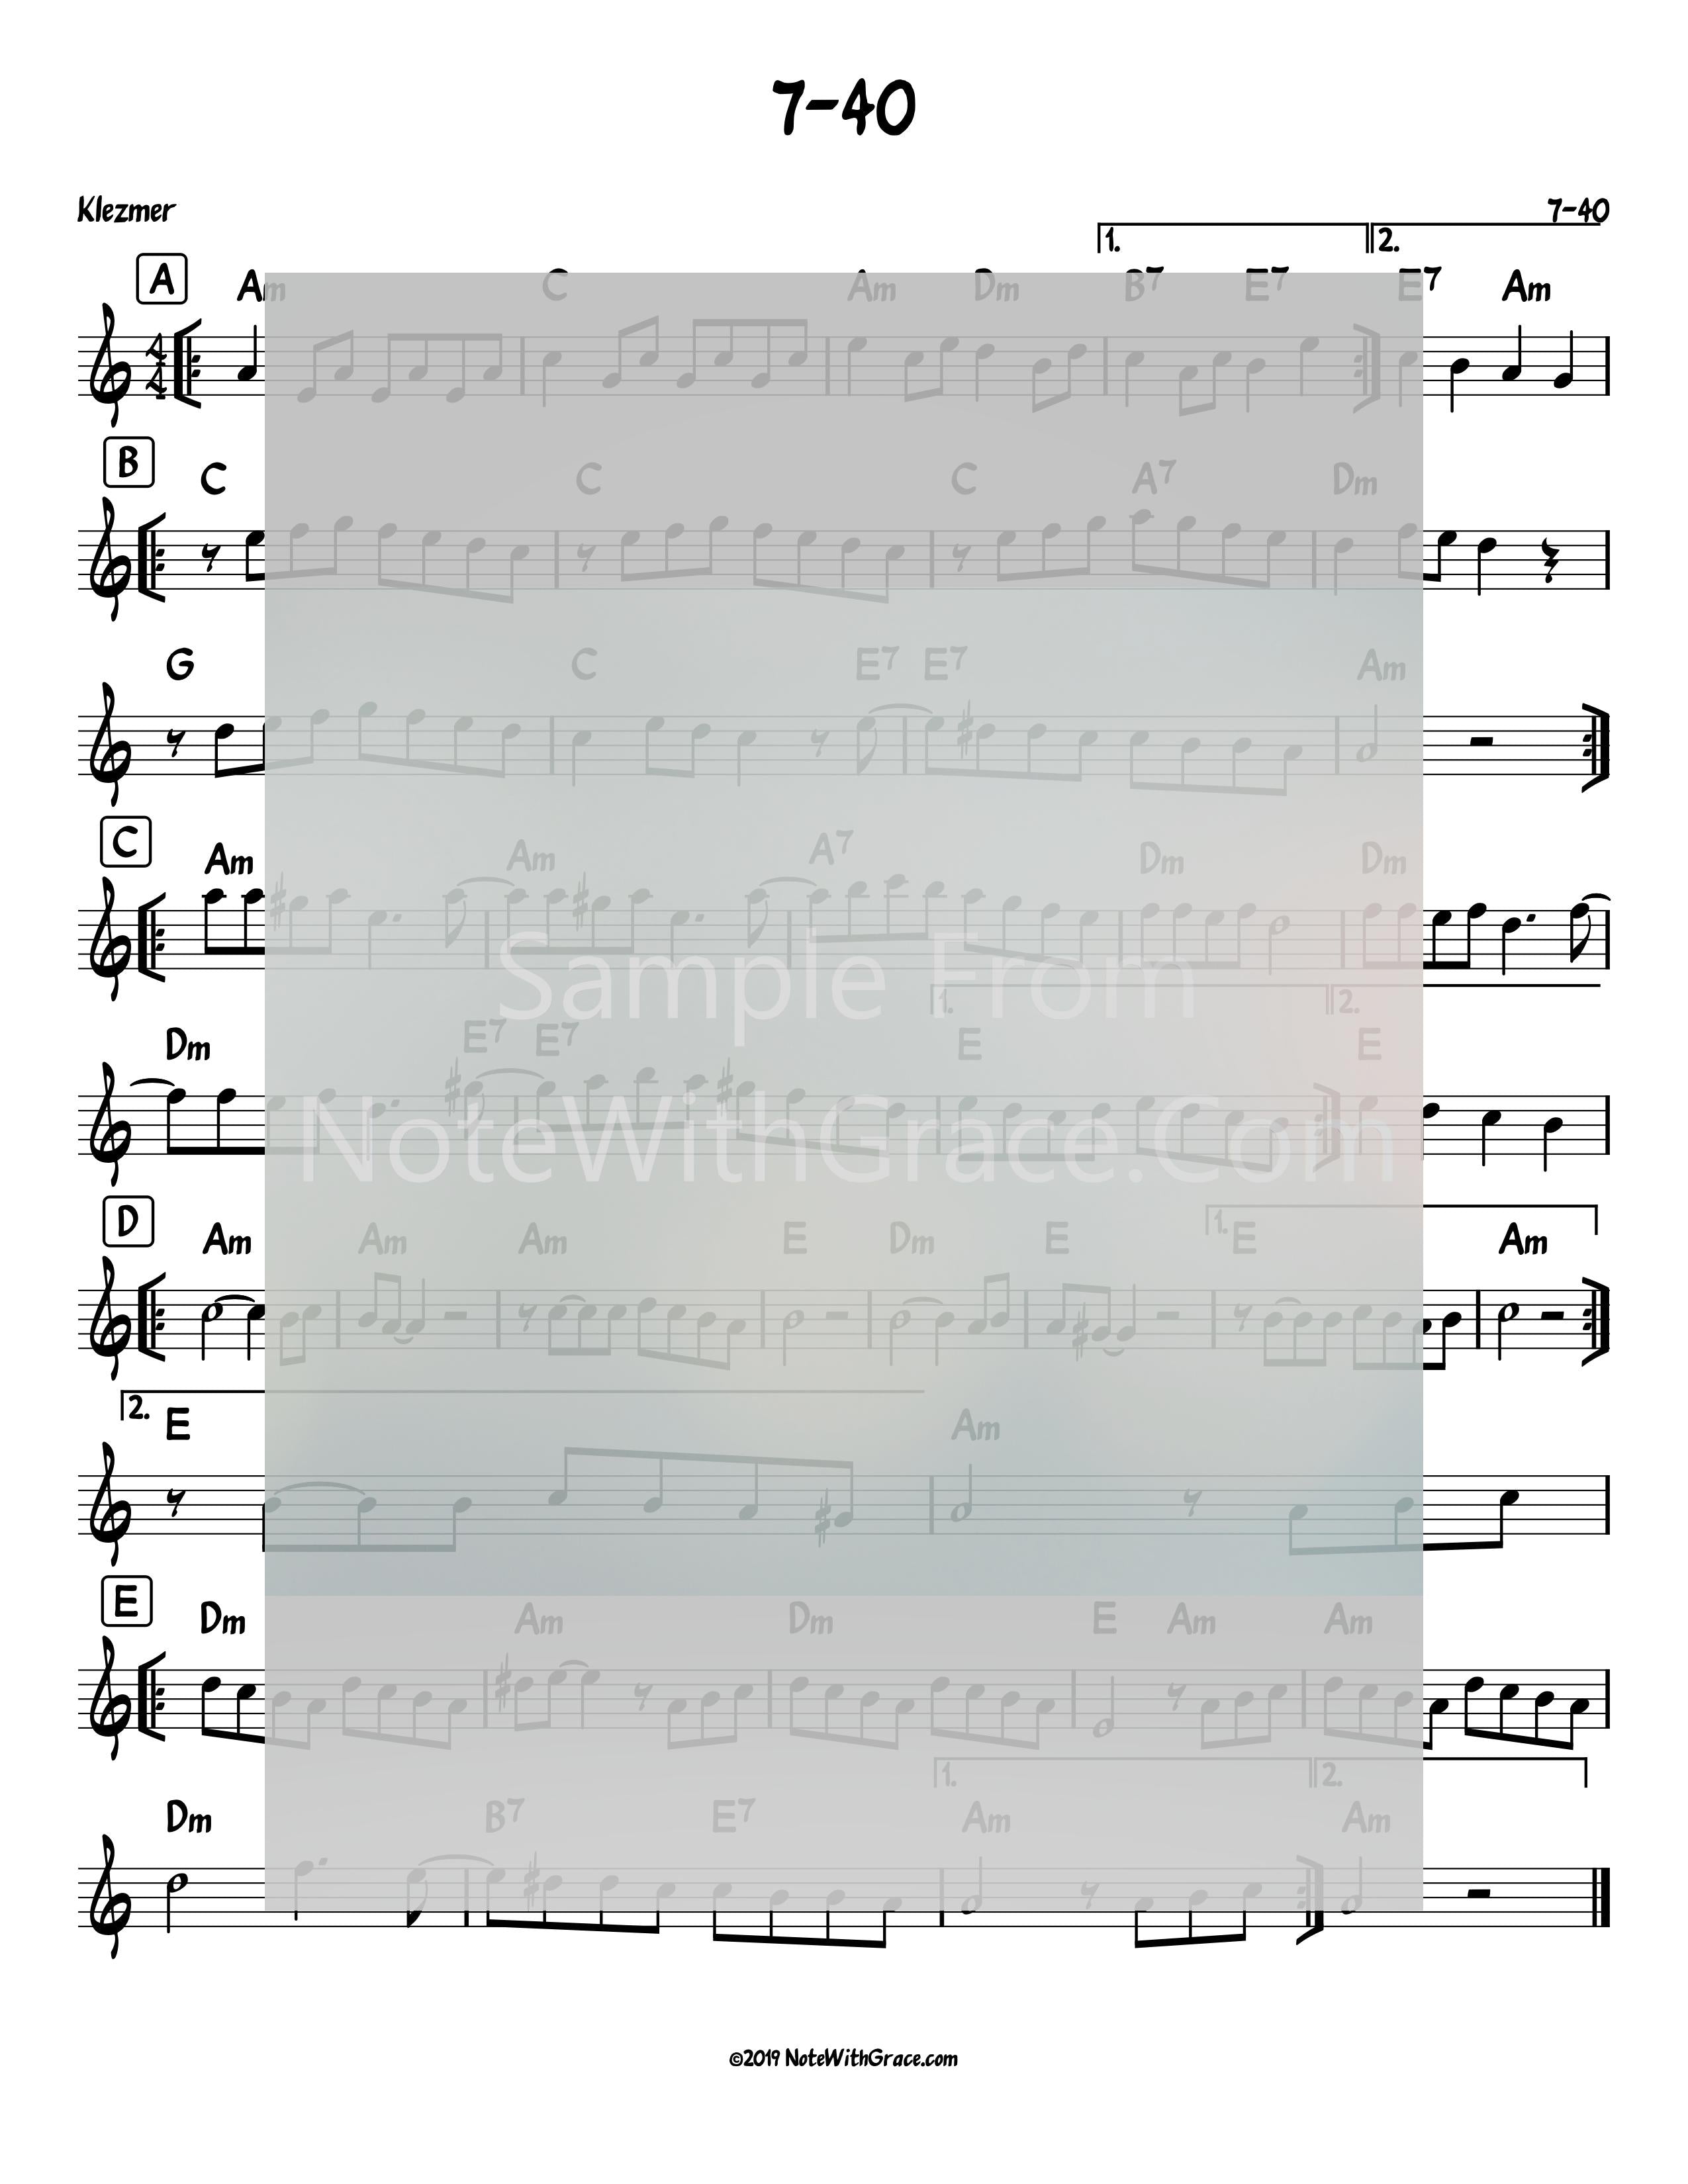 7-40 Klezmer-Sheet music-NoteWithGrace.com